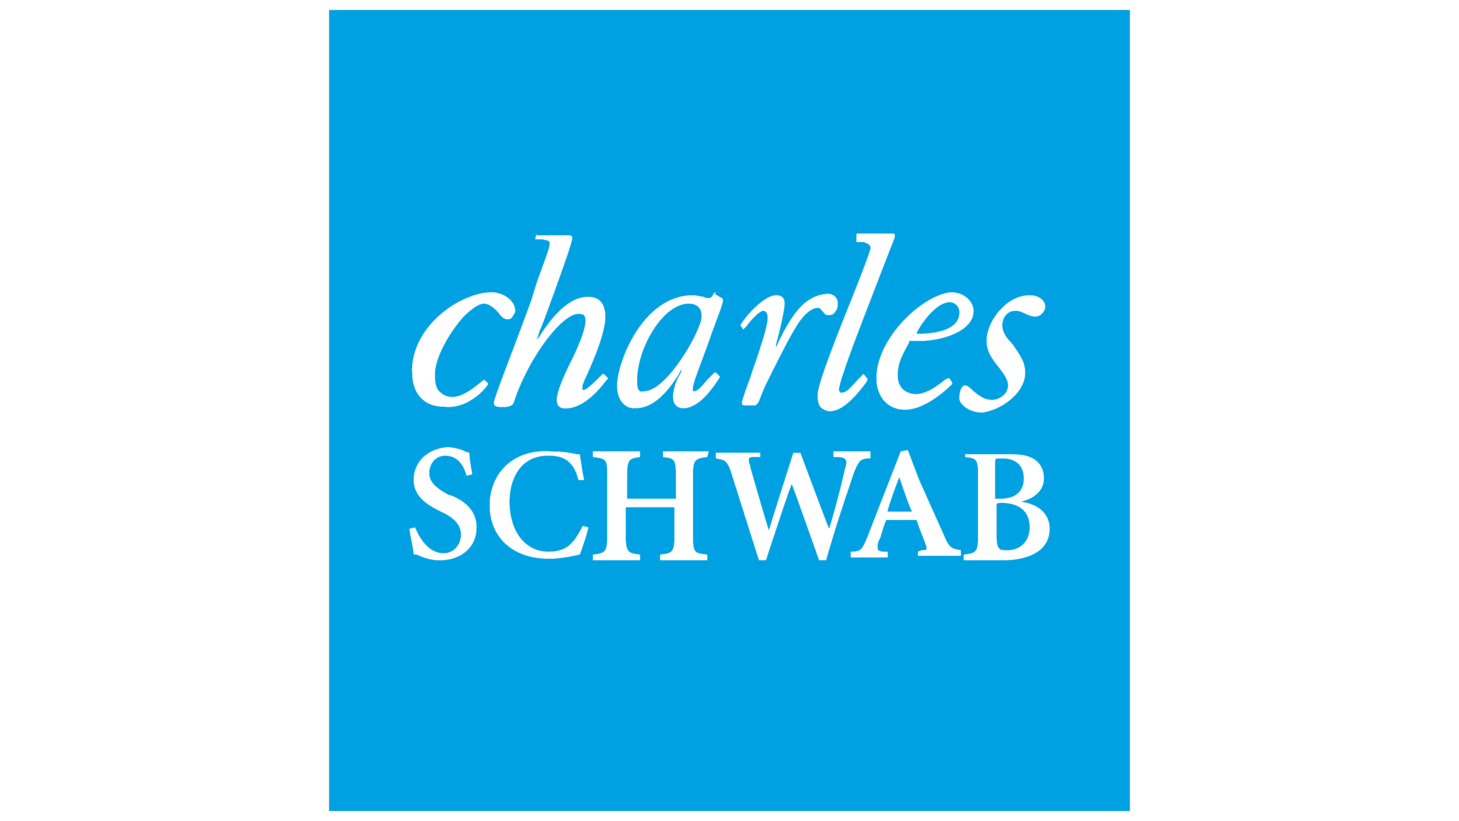 Charles schwab sign